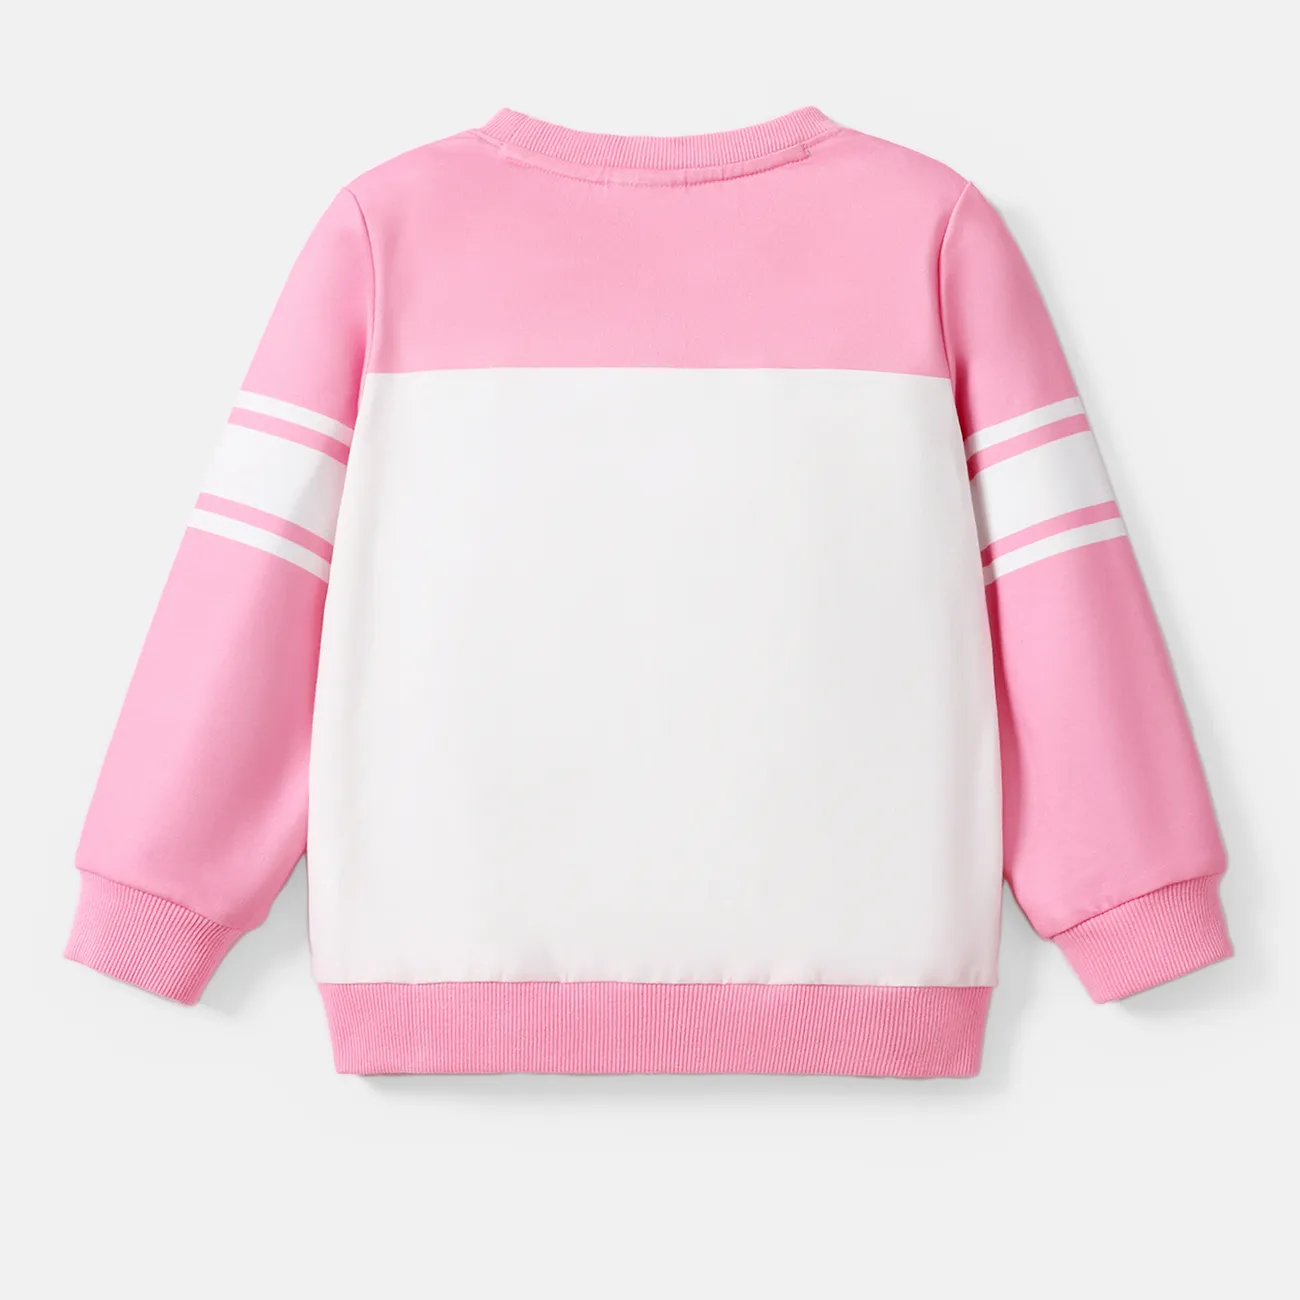 PAW Patrol Toddler Girl/Boy Naia™ Character Print Pullover Sweatshirt  Pink big image 1